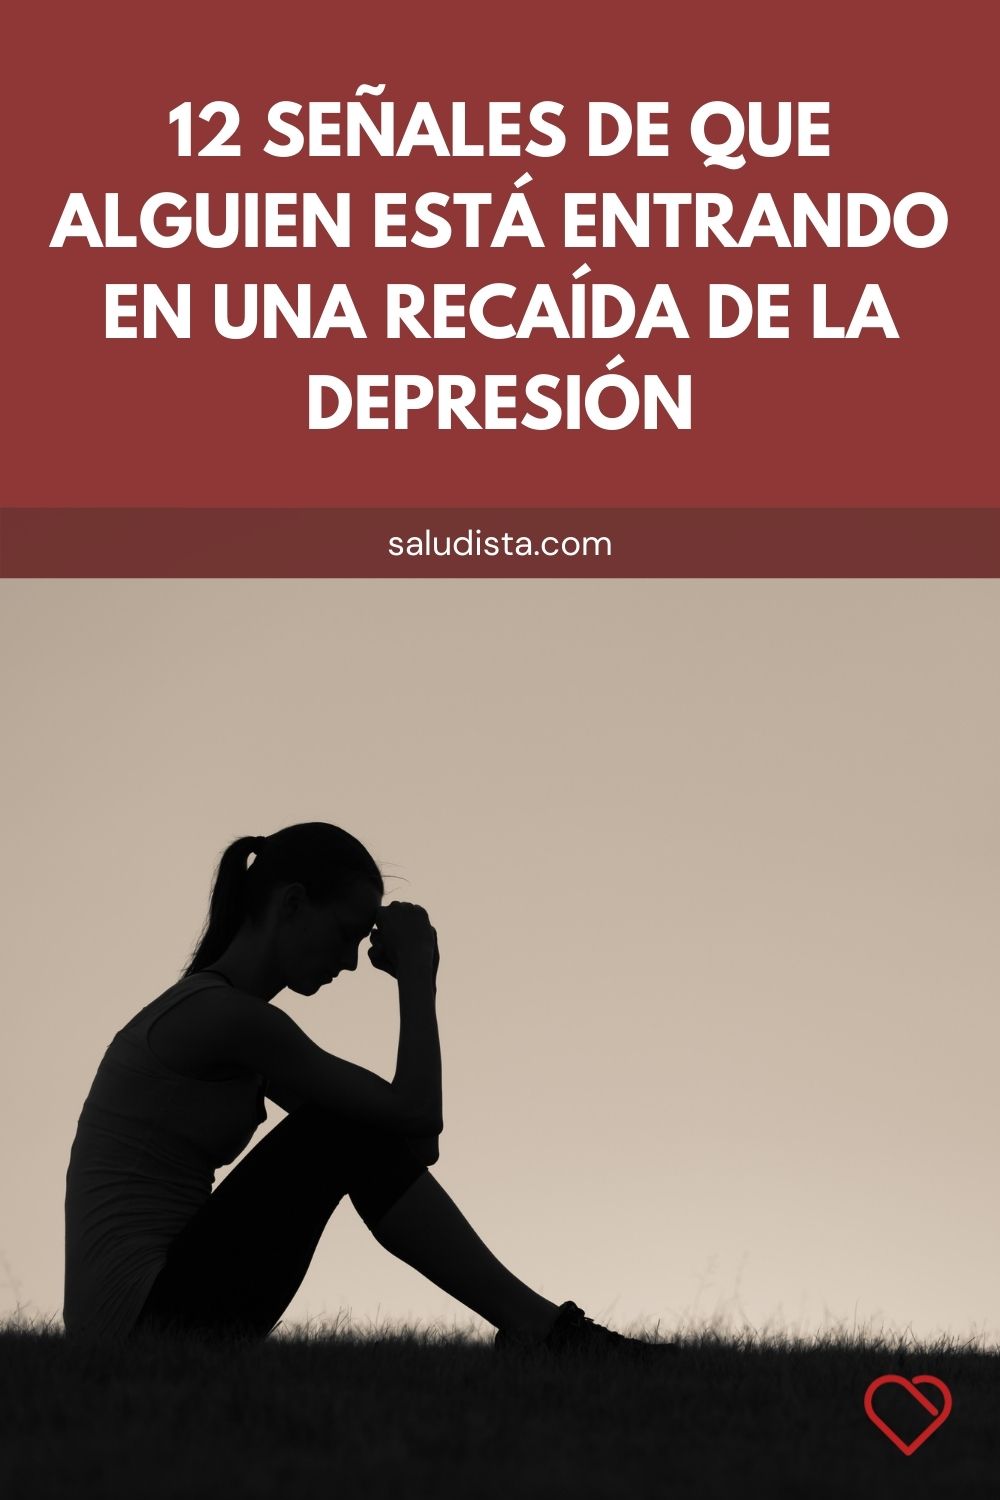 12 señales de que alguien está entrando en una recaída de la depresión